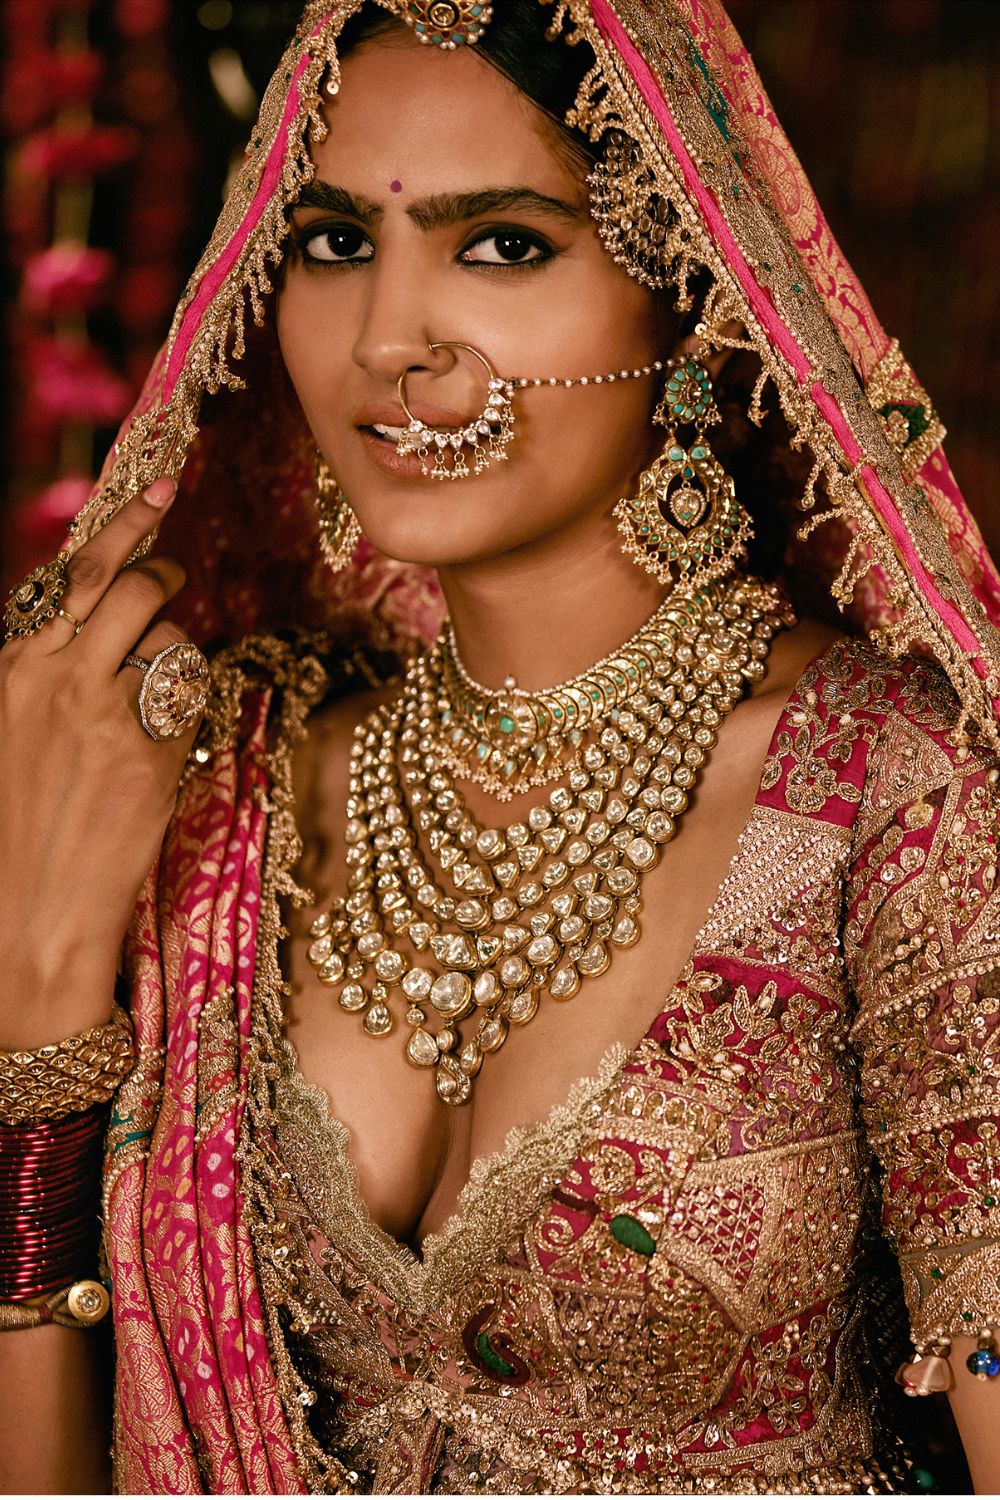 Rimple & Harpreet Narula Lehengas Take Over Bridal Wardrobers & How! |  Rimple and harpreet narula, Indian bridal outfits, Bridal outfits